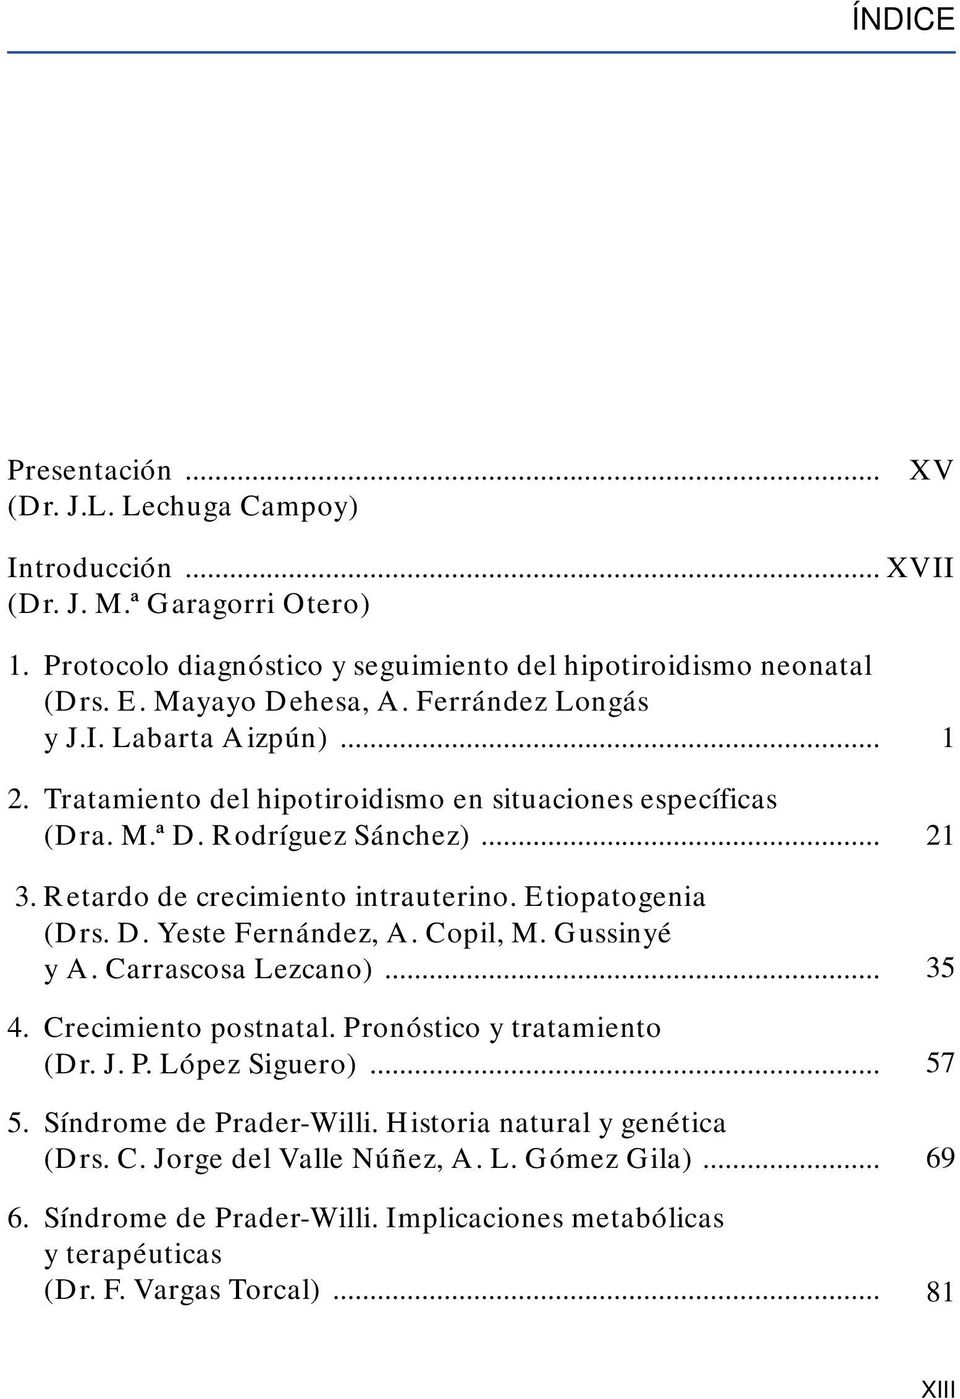 Retardo de crecimiento intrauterino. Etiopatogenia (Drs. D. Yeste Fernández, A. Copil, M. Gussinyé y A. Carrascosa Lezcano)... 4. Crecimiento postnatal. Pronóstico y tratamiento (Dr. J. P. López Siguero).